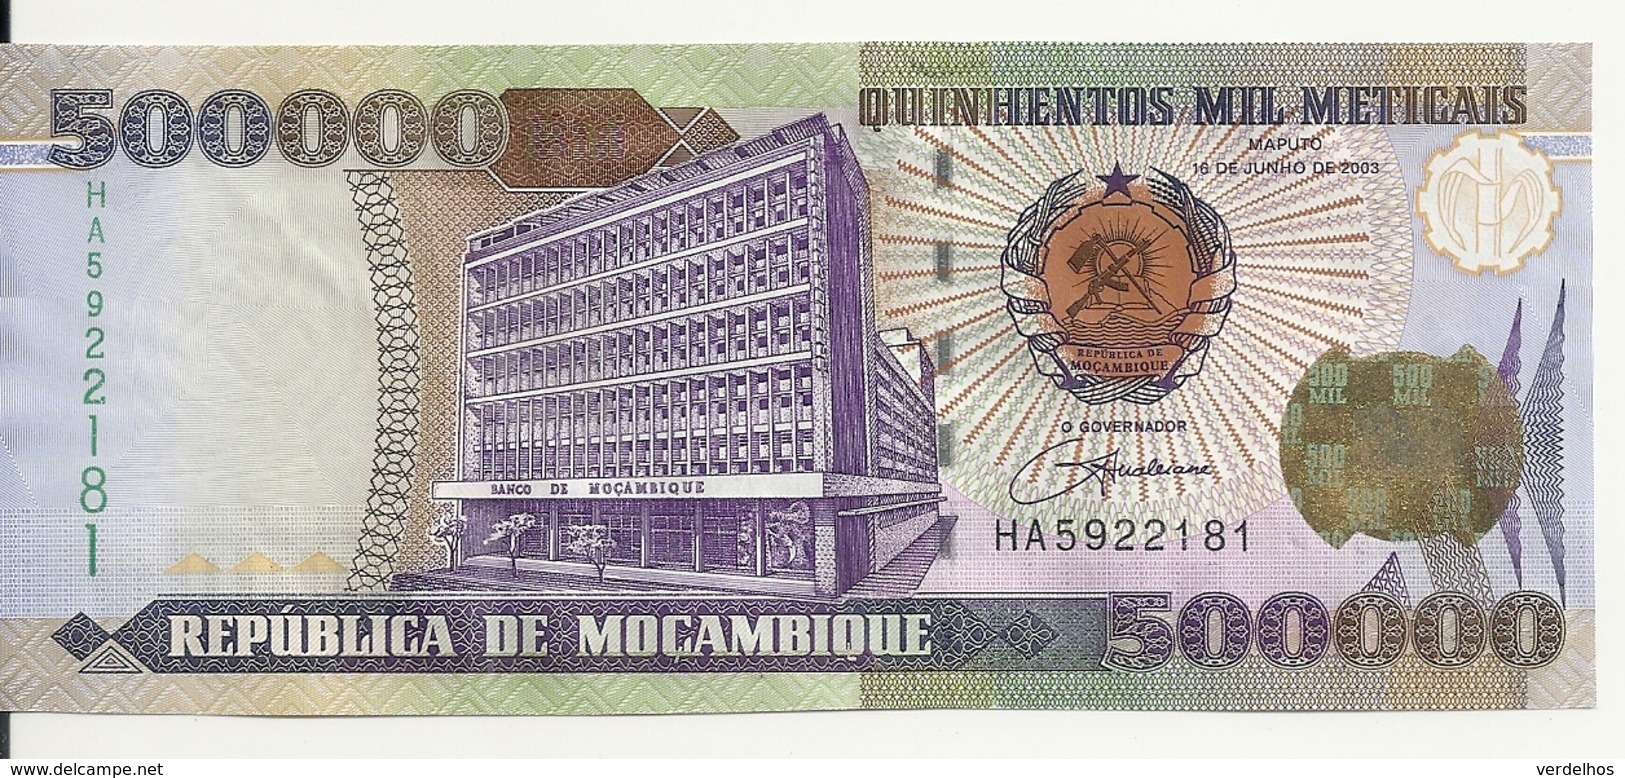 MOZAMBIQUE 500000 METICAIS 2003 UNC P 142 - Mozambique